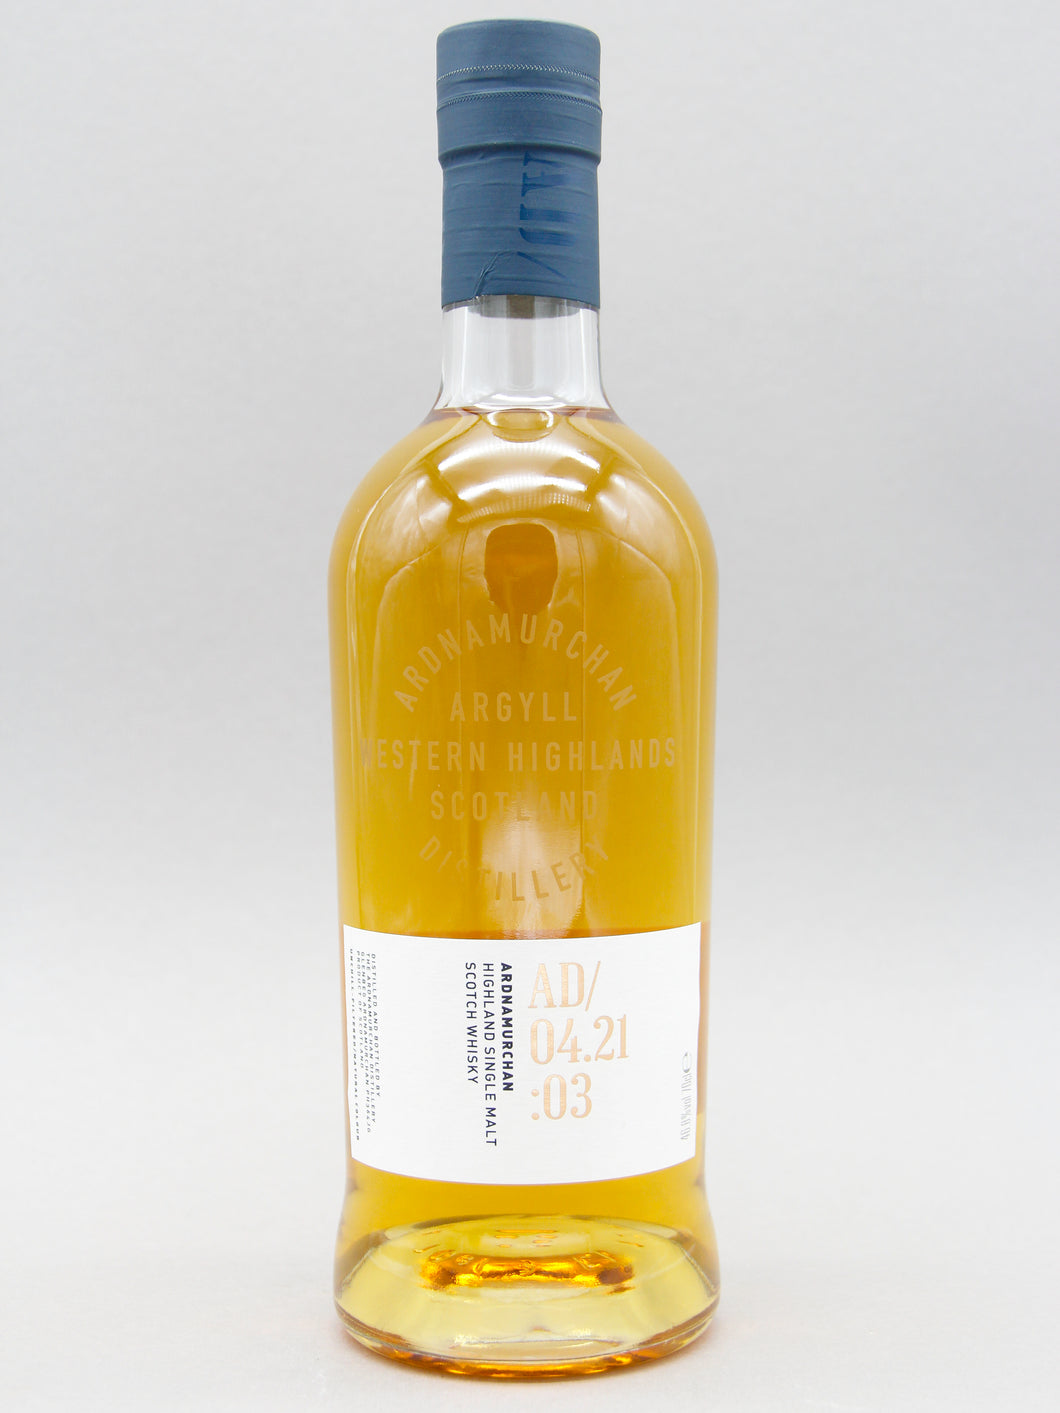 Ardnamurchan 04.21:03, Highland Single Malt Scotch Whisky (46.8%, 70cl)